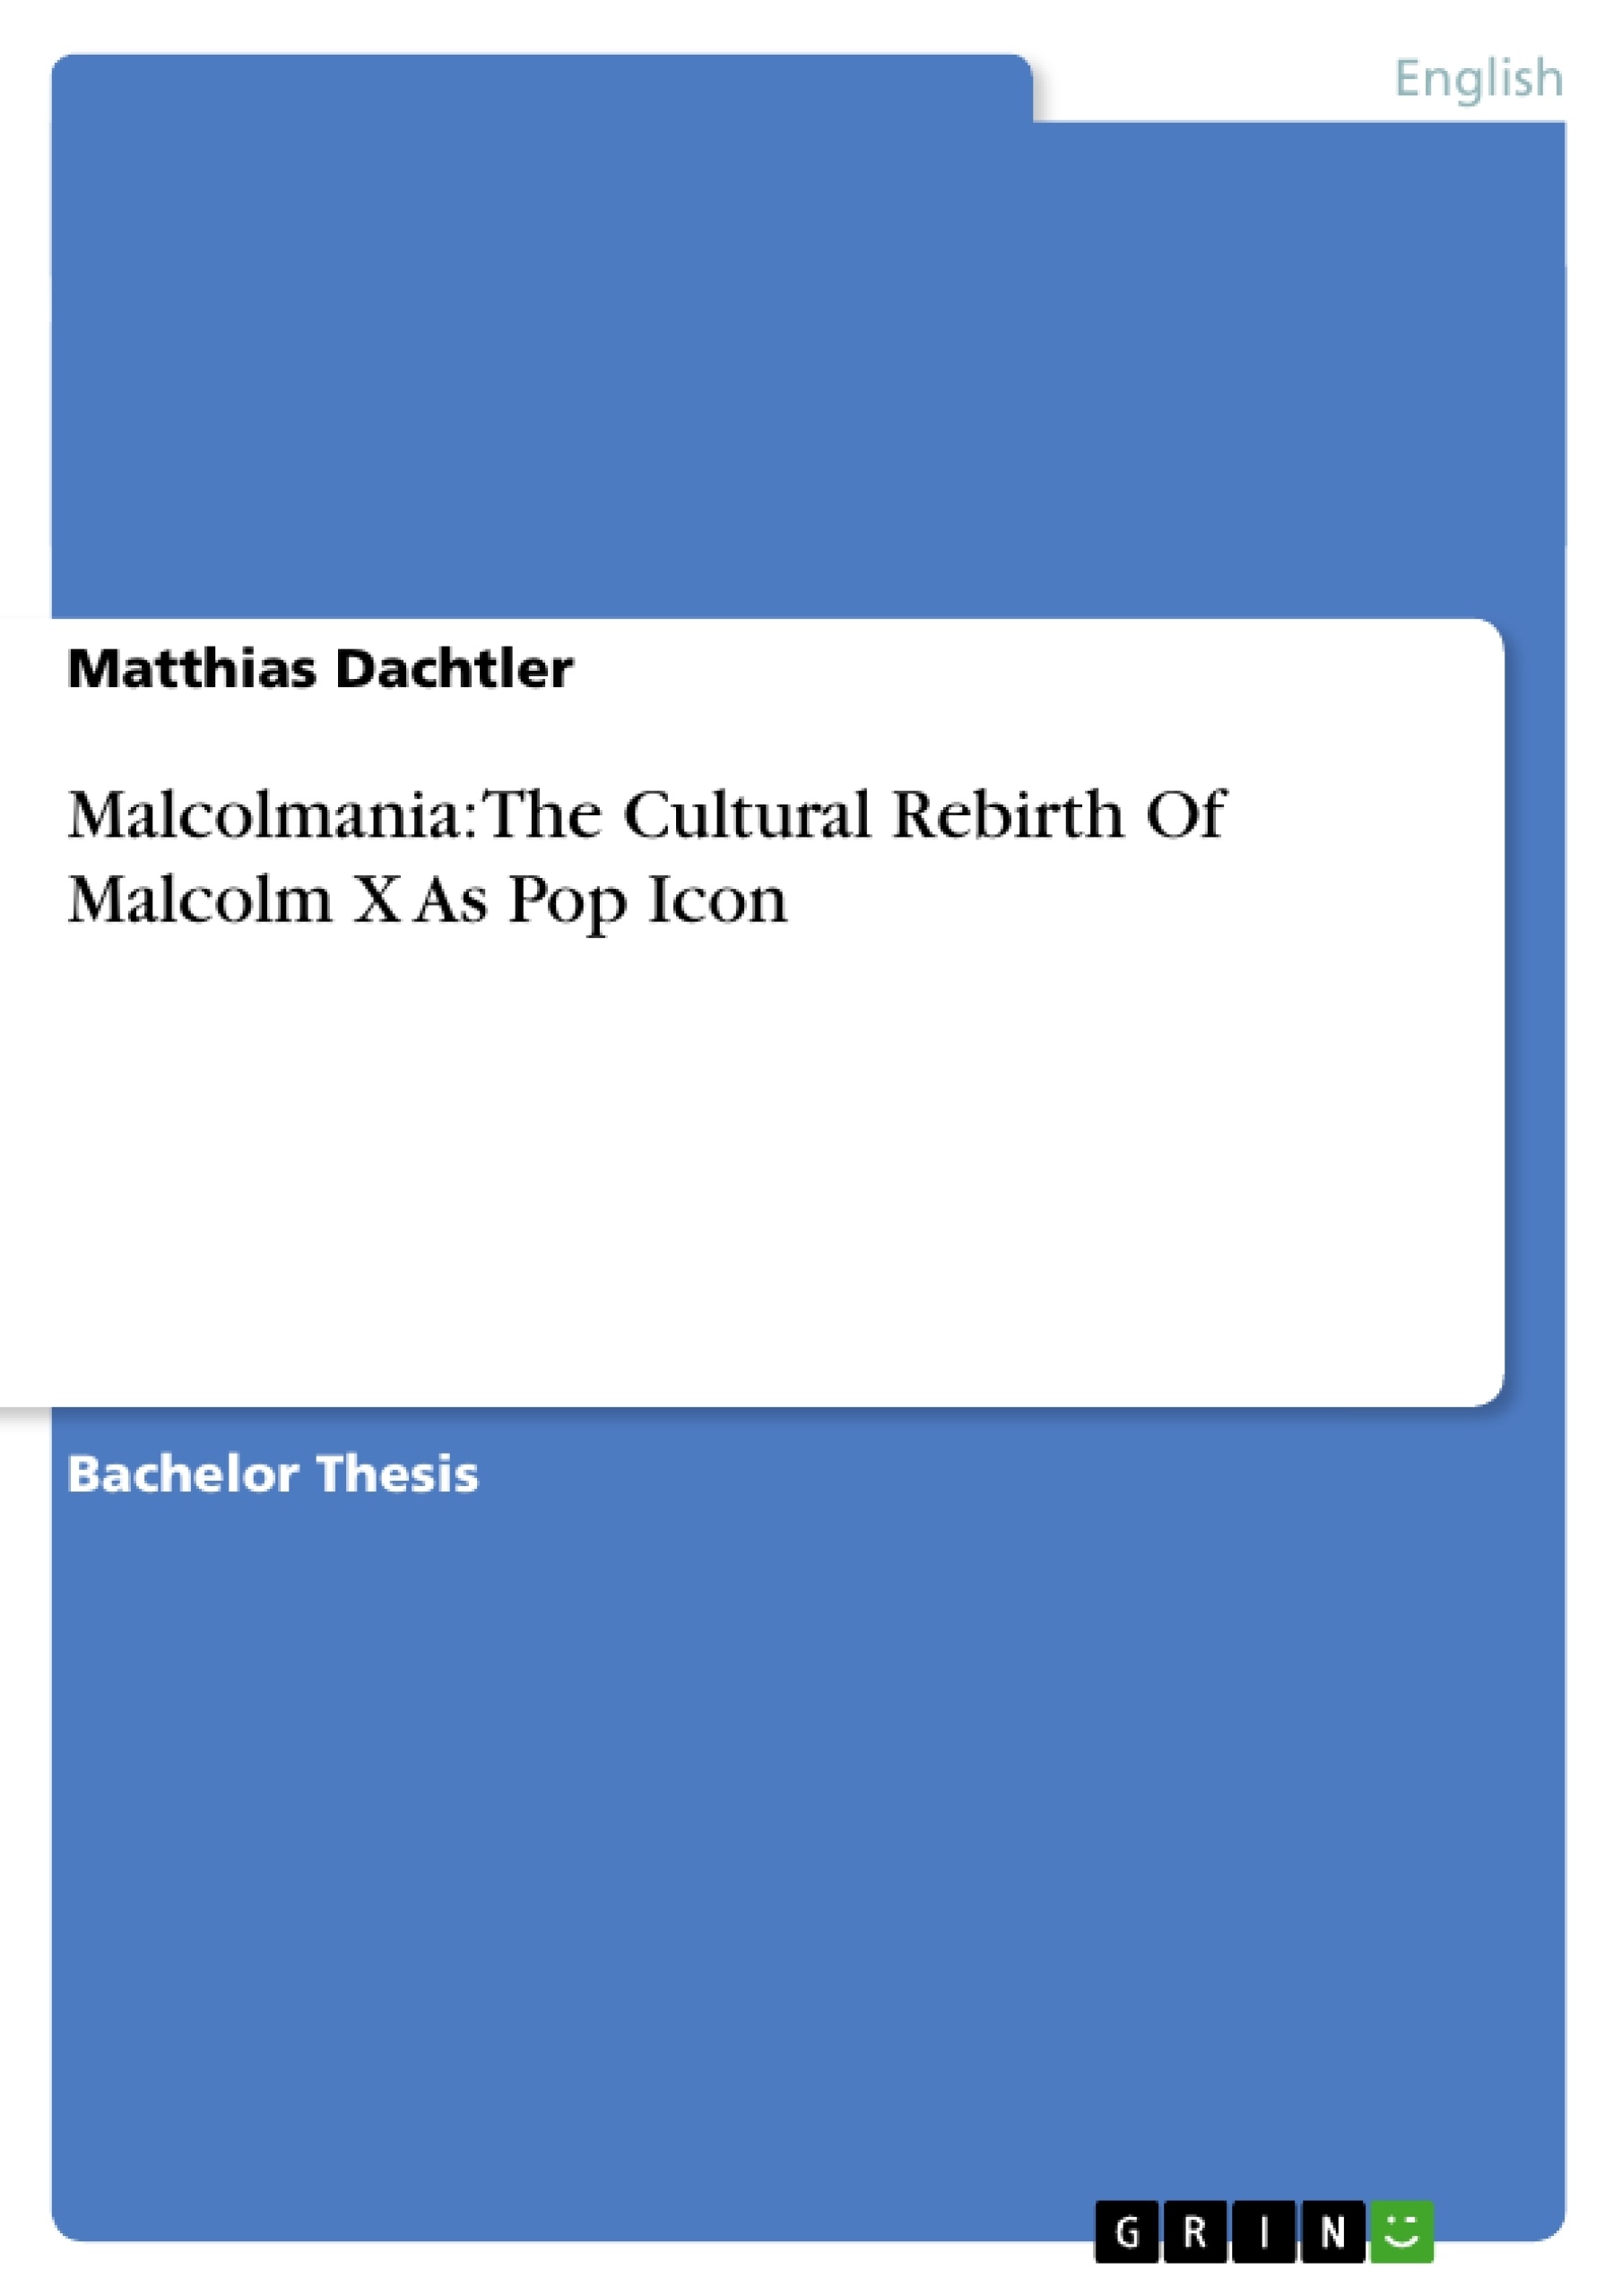 Title: Malcolmania: The Cultural Rebirth Of Malcolm X As Pop Icon